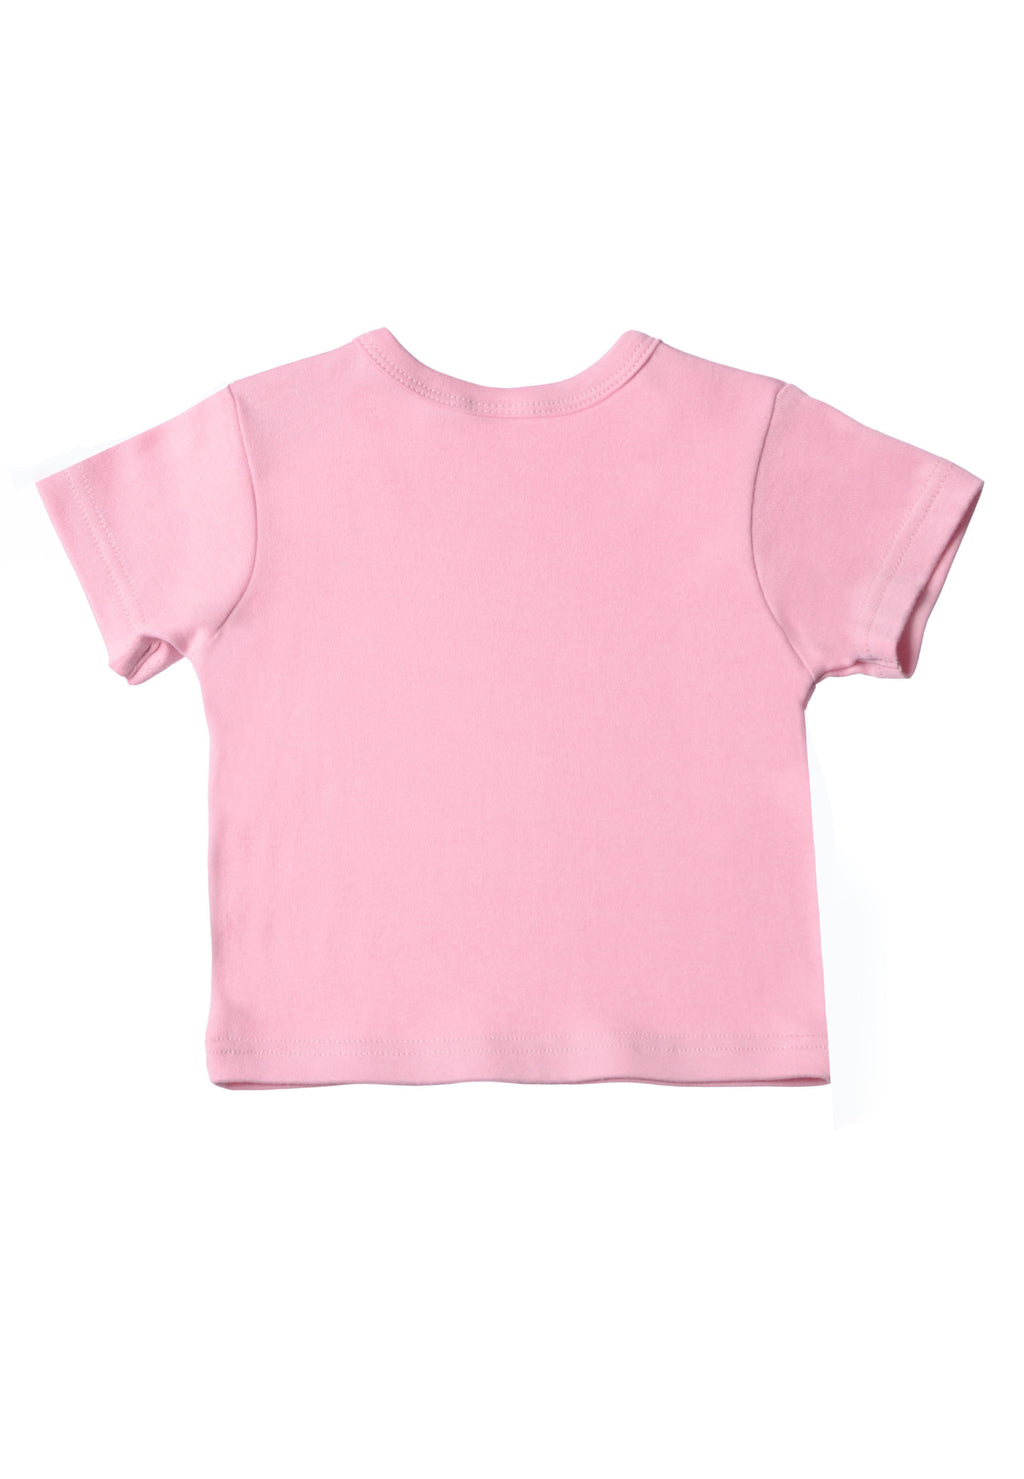 Doppelpack T-Shirts in pink und weiß mit Aufdruck aus Bio Baumwolle